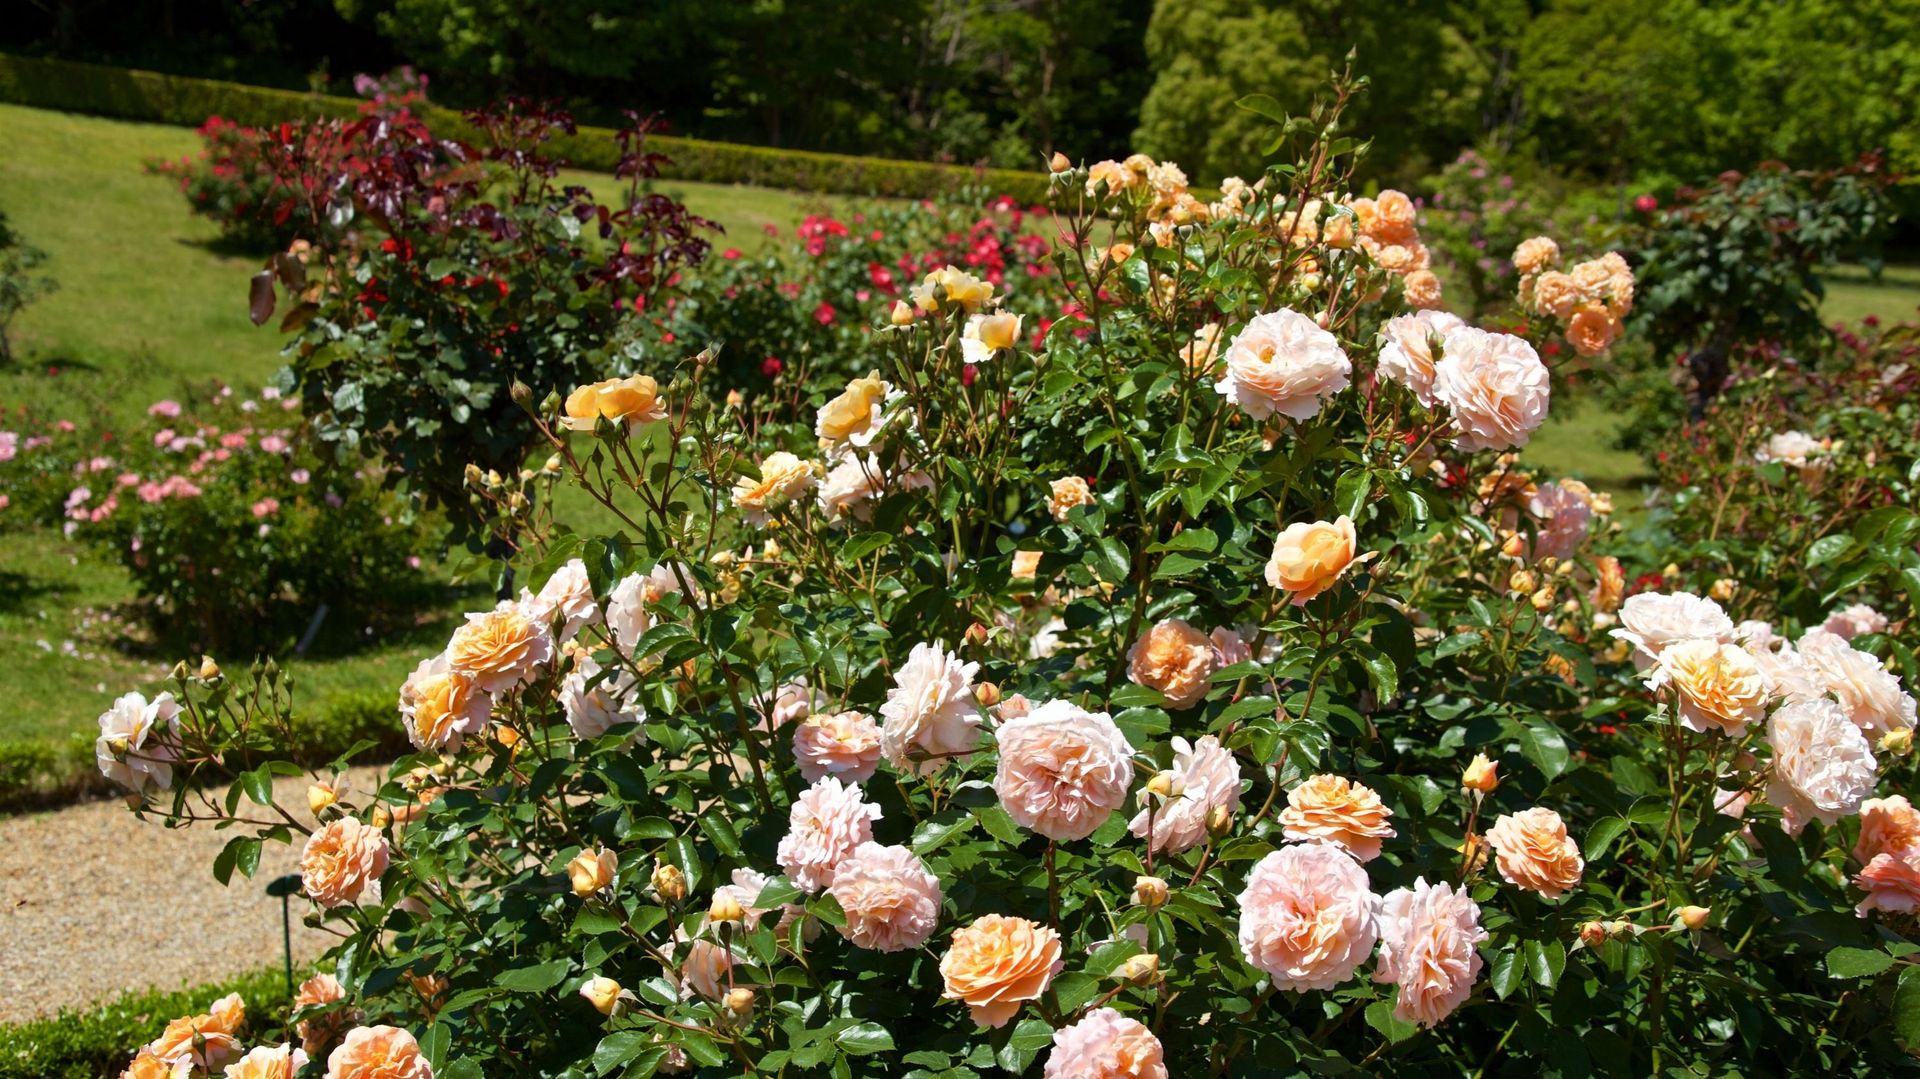 Les Jardins des roses luxembourgeoises se situent dans le parc du château de Munsbach. Depuis 2017, les bénévoles de l’association « Lëtzebuerger Rousenfrënn » entretiennent et animent une magnifique roseraie.